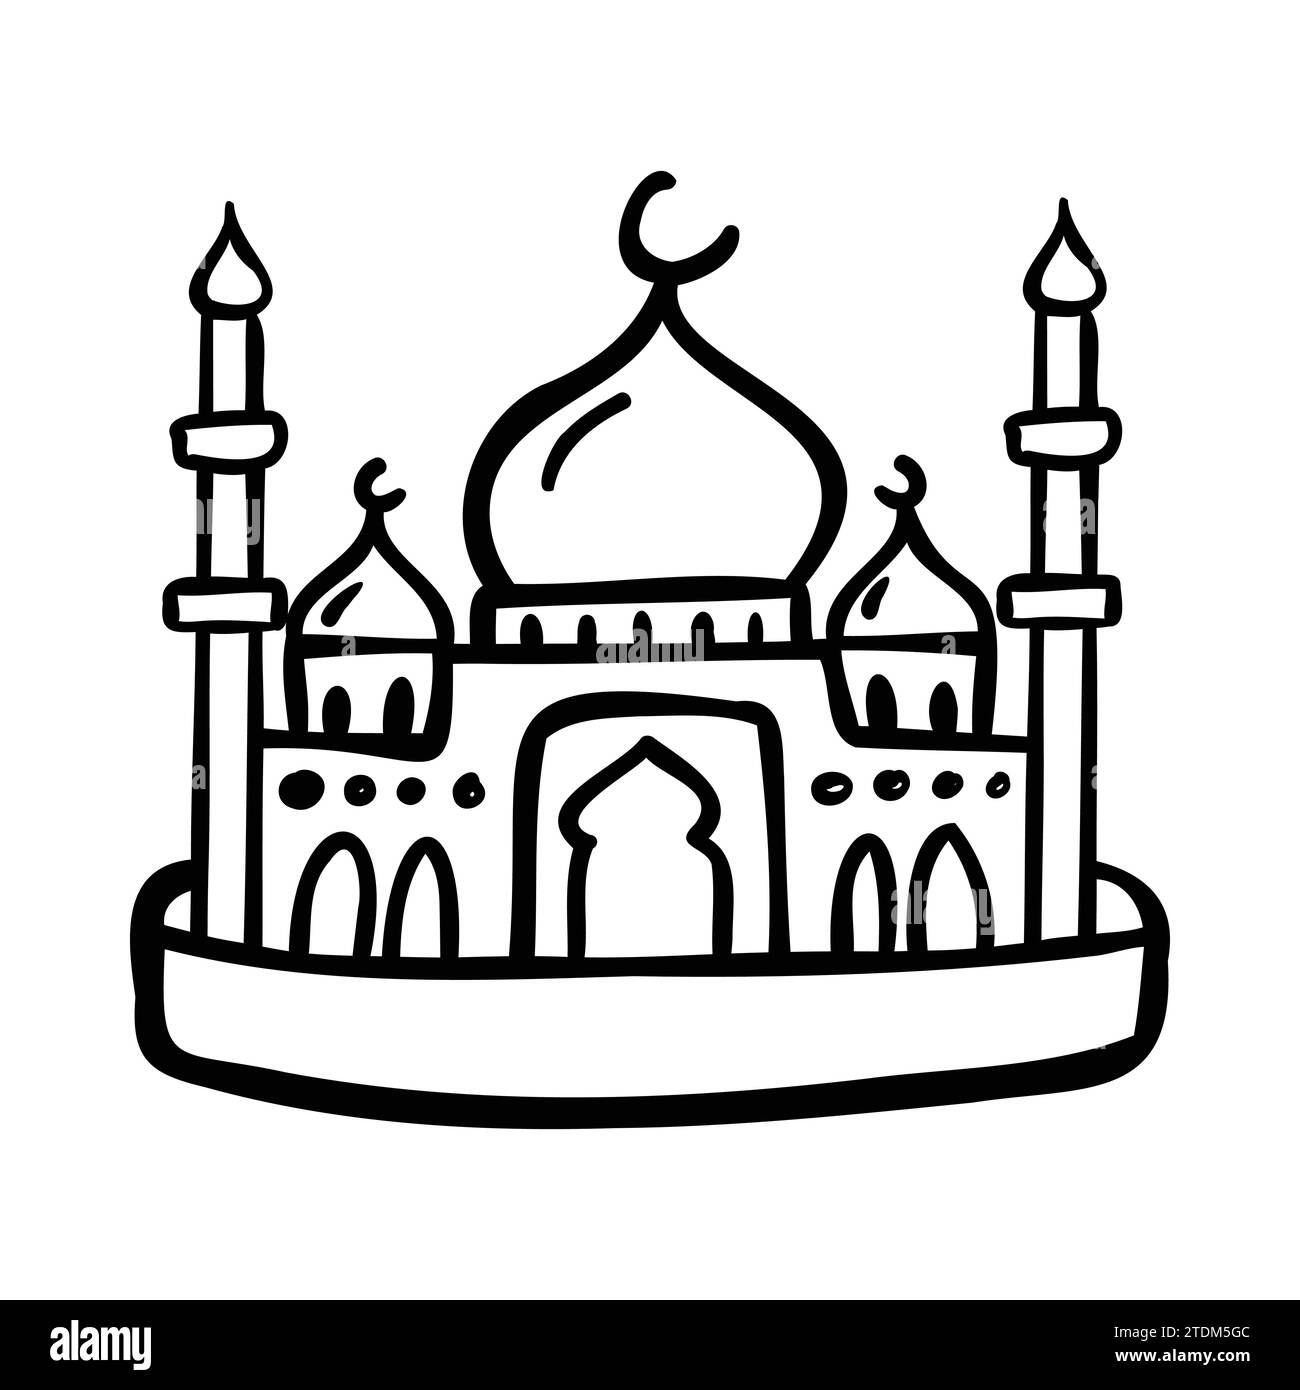 Doodle einer muslimischen Moschee, isoliert auf weißem Hintergrund. Einfache schwarze Konturvektorzeichnung. Skizze in Tinte. Stock Vektor